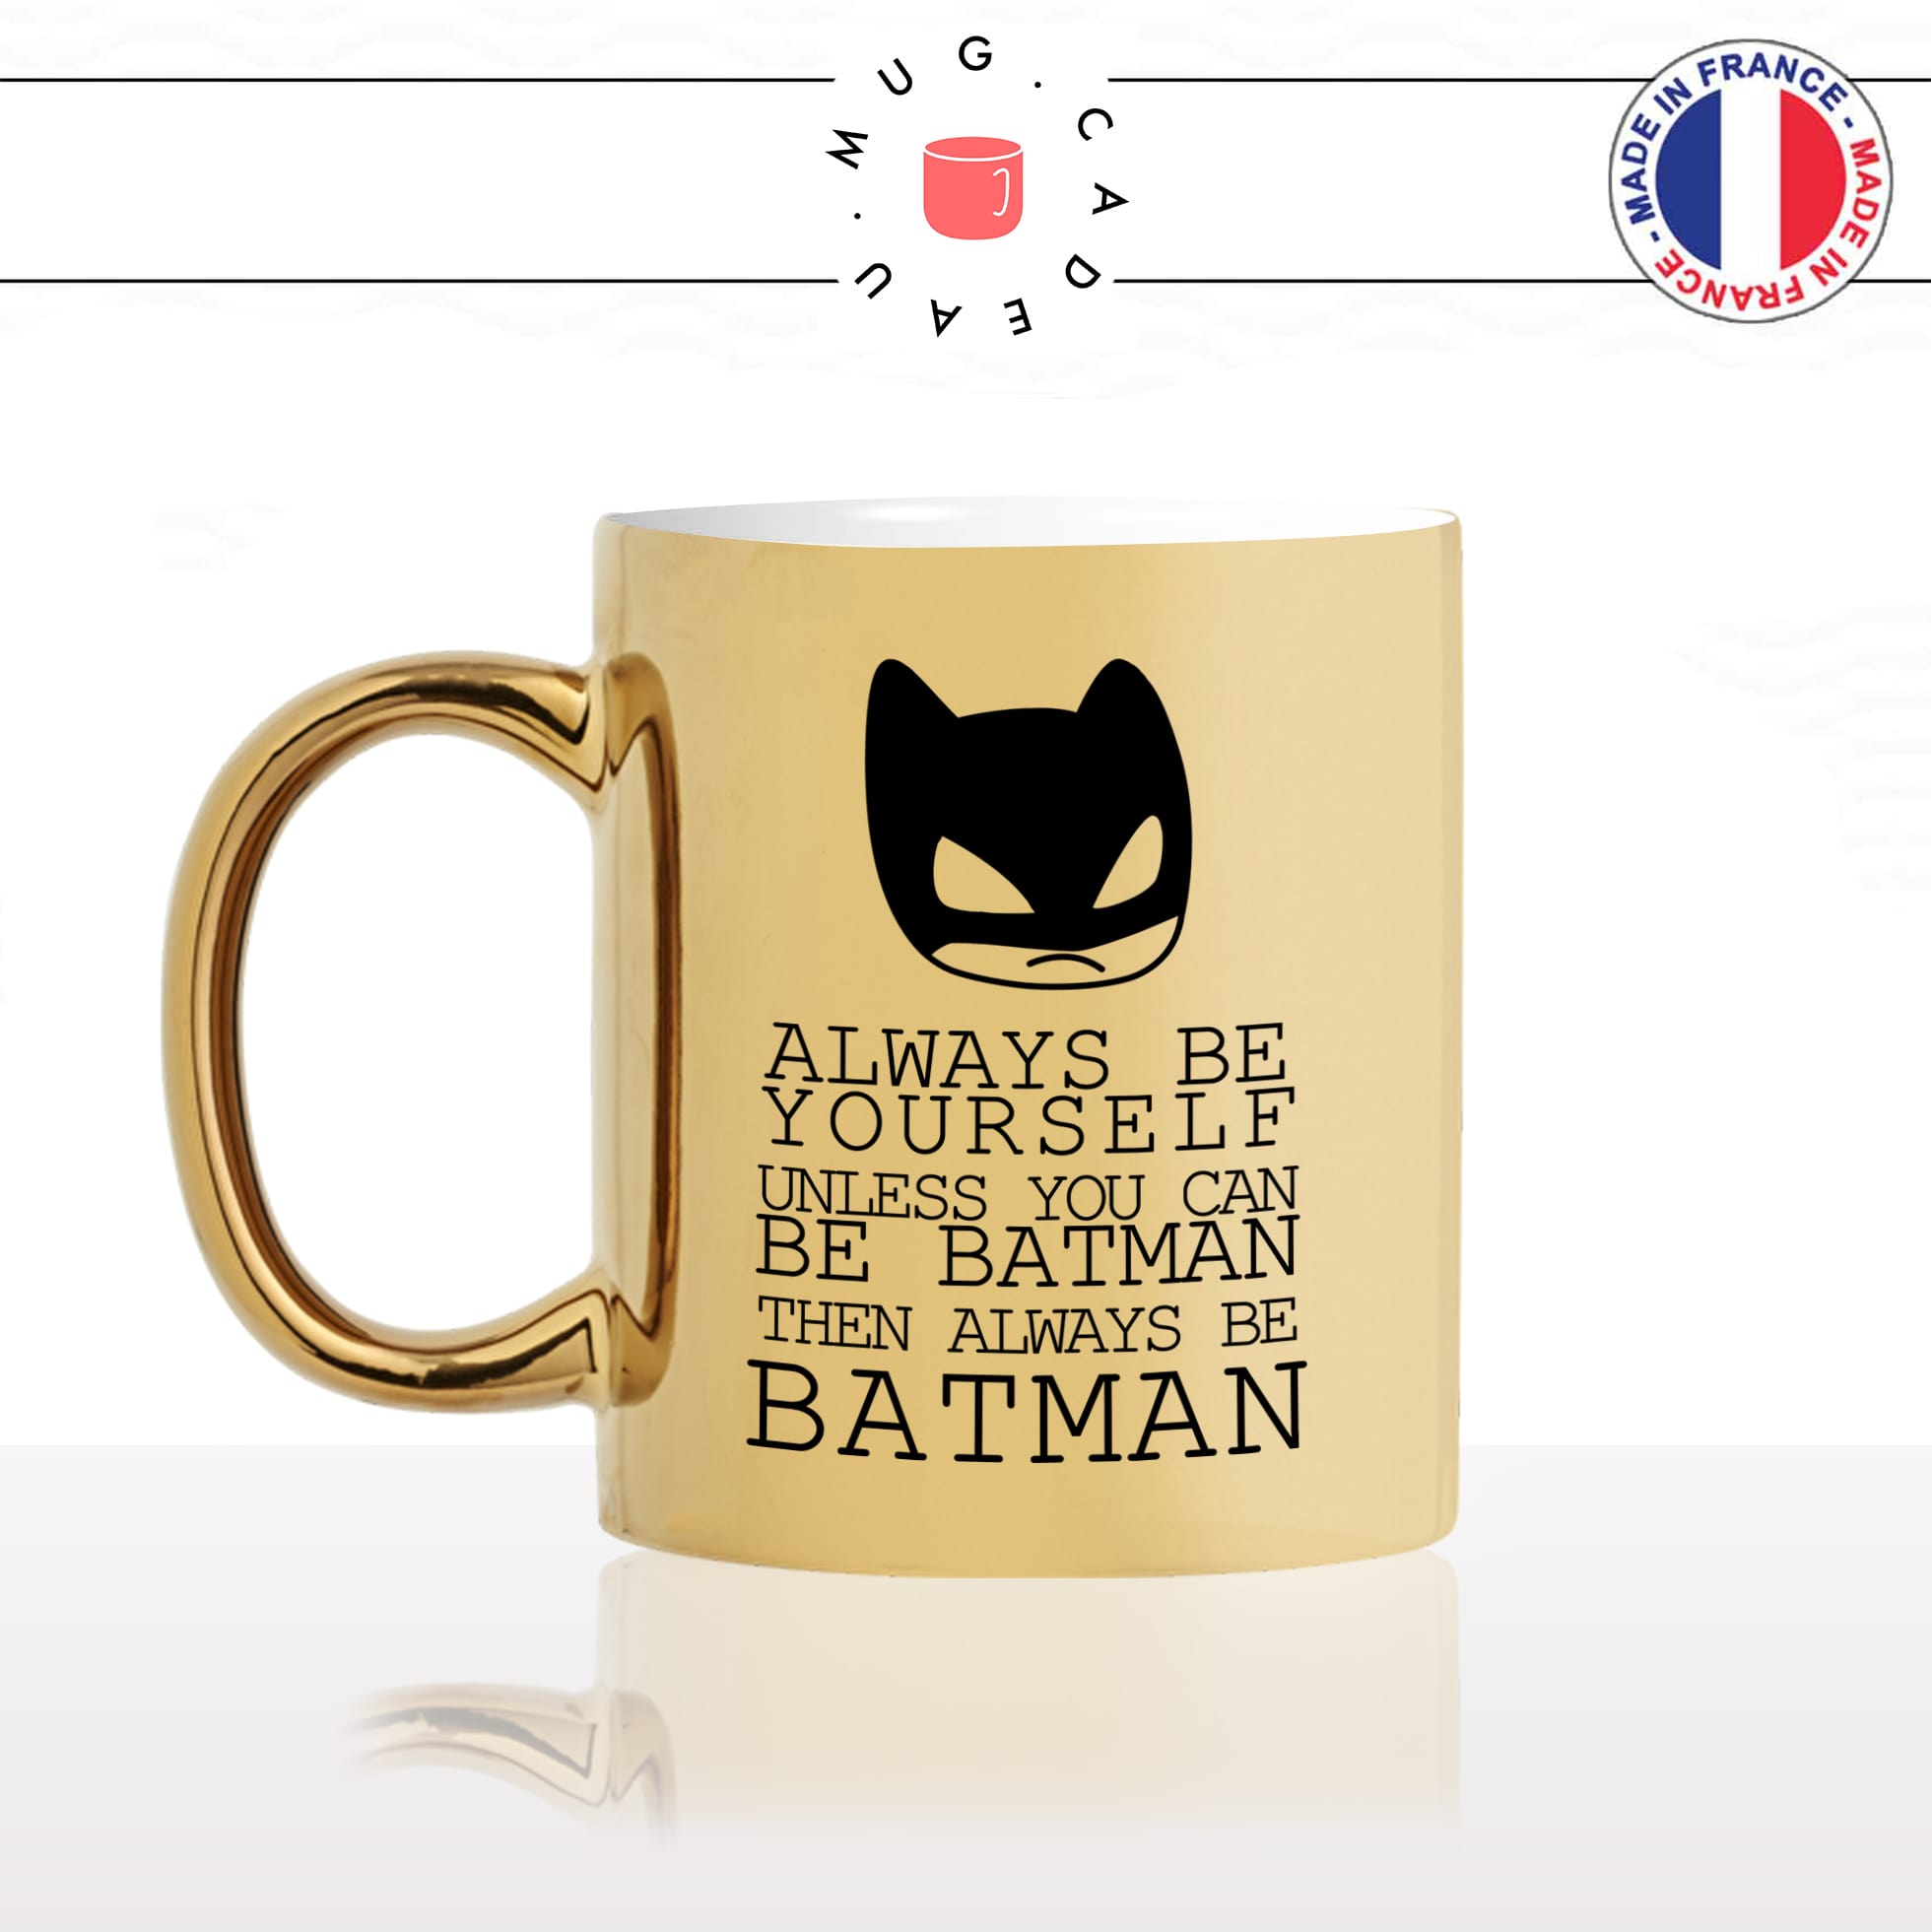 mug-tasse-doré-or-gold-super-héro-be-yourself-be-batman-masque-cape-cool-humour-fun-idée-cadeau-personnalisé-café-thé-chocolat-min